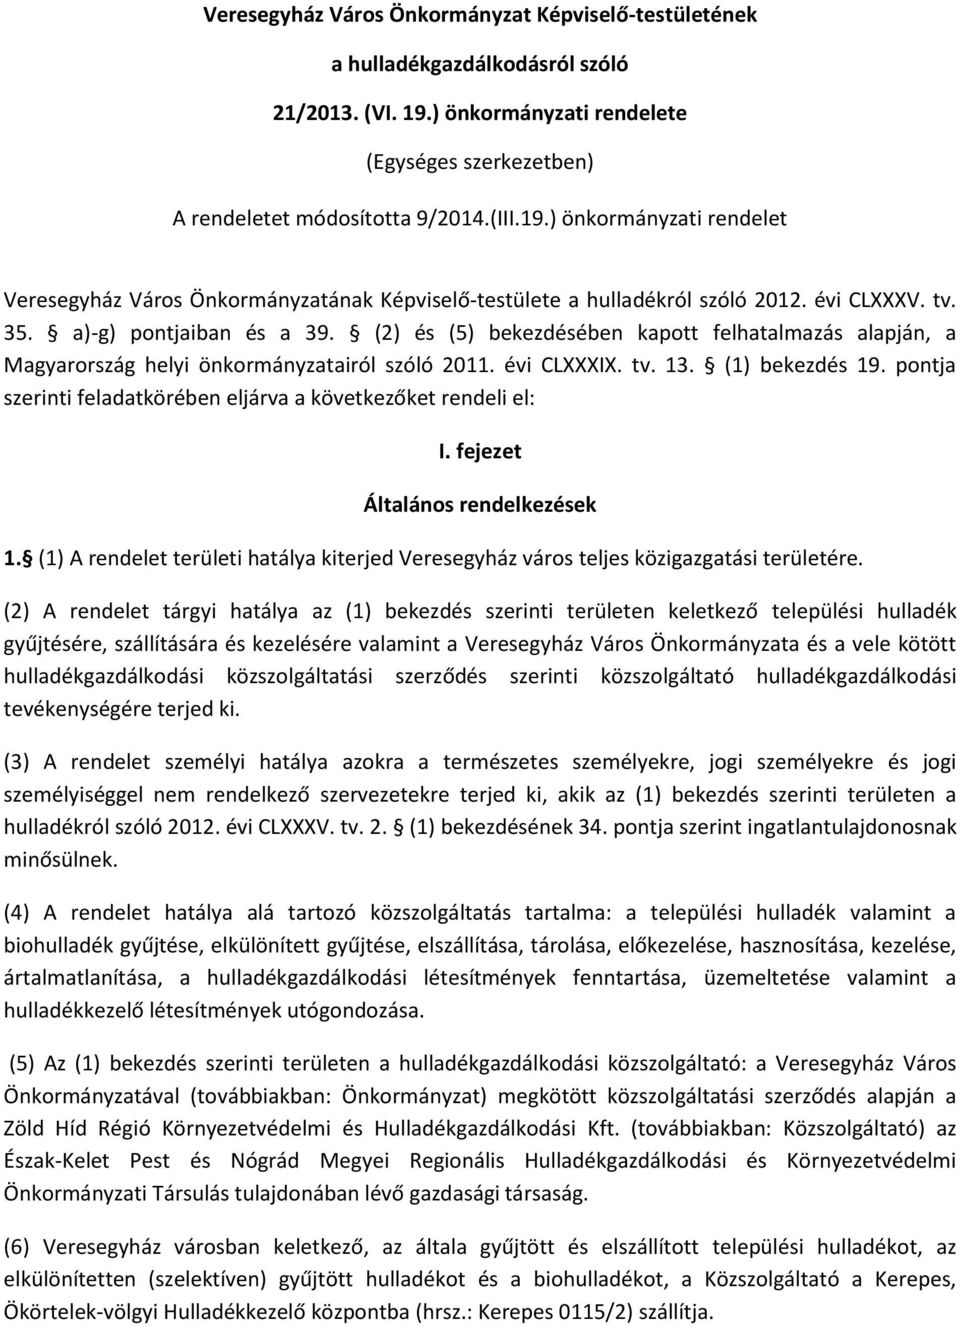 évi CLXXXV. tv. 35. a)-g) pontjaiban és a 39. (2) és (5) bekezdésében kapott felhatalmazás alapján, a Magyarország helyi önkormányzatairól szóló 2011. évi CLXXXIX. tv. 13. (1) bekezdés 19.